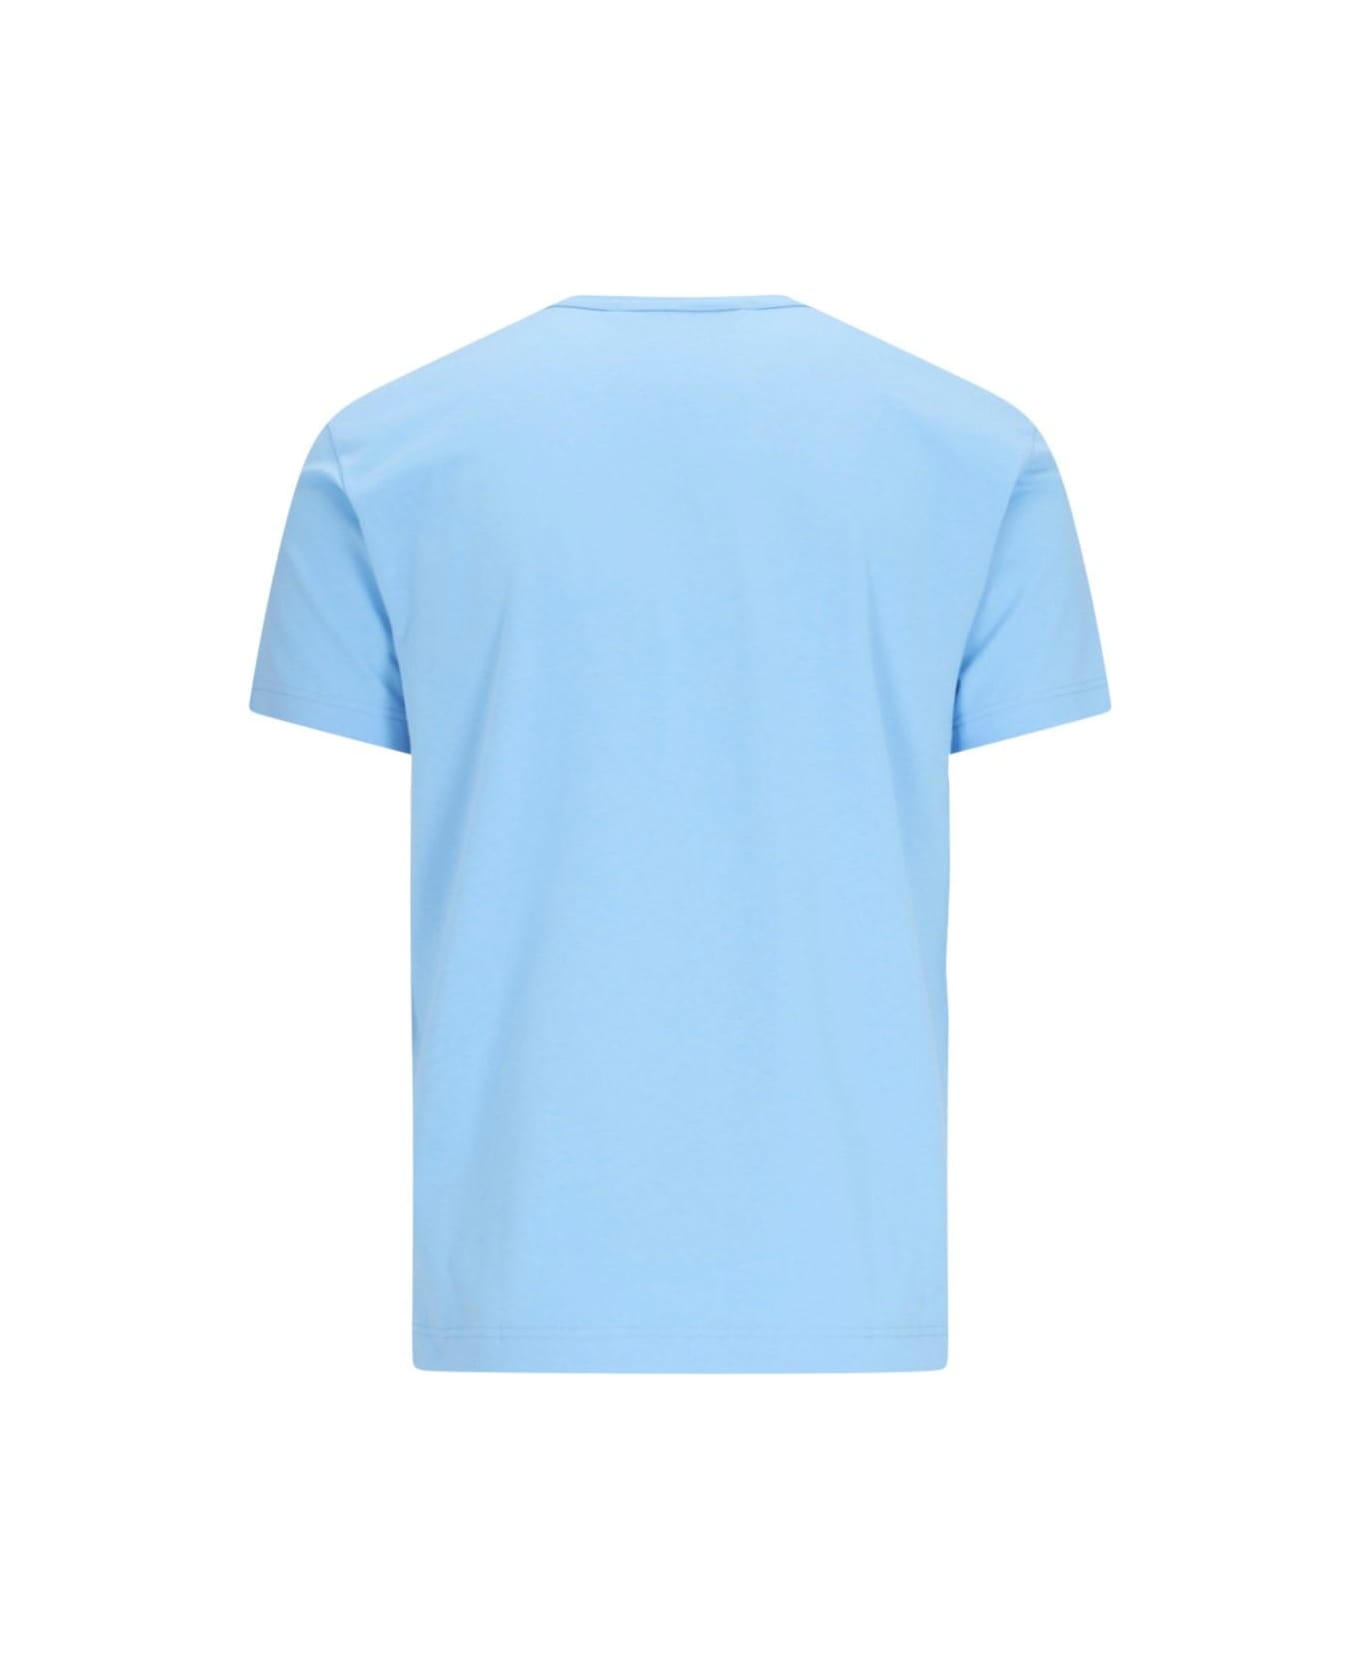 Comme des Garçons Shirt Logo T-shirt - Blue シャツ